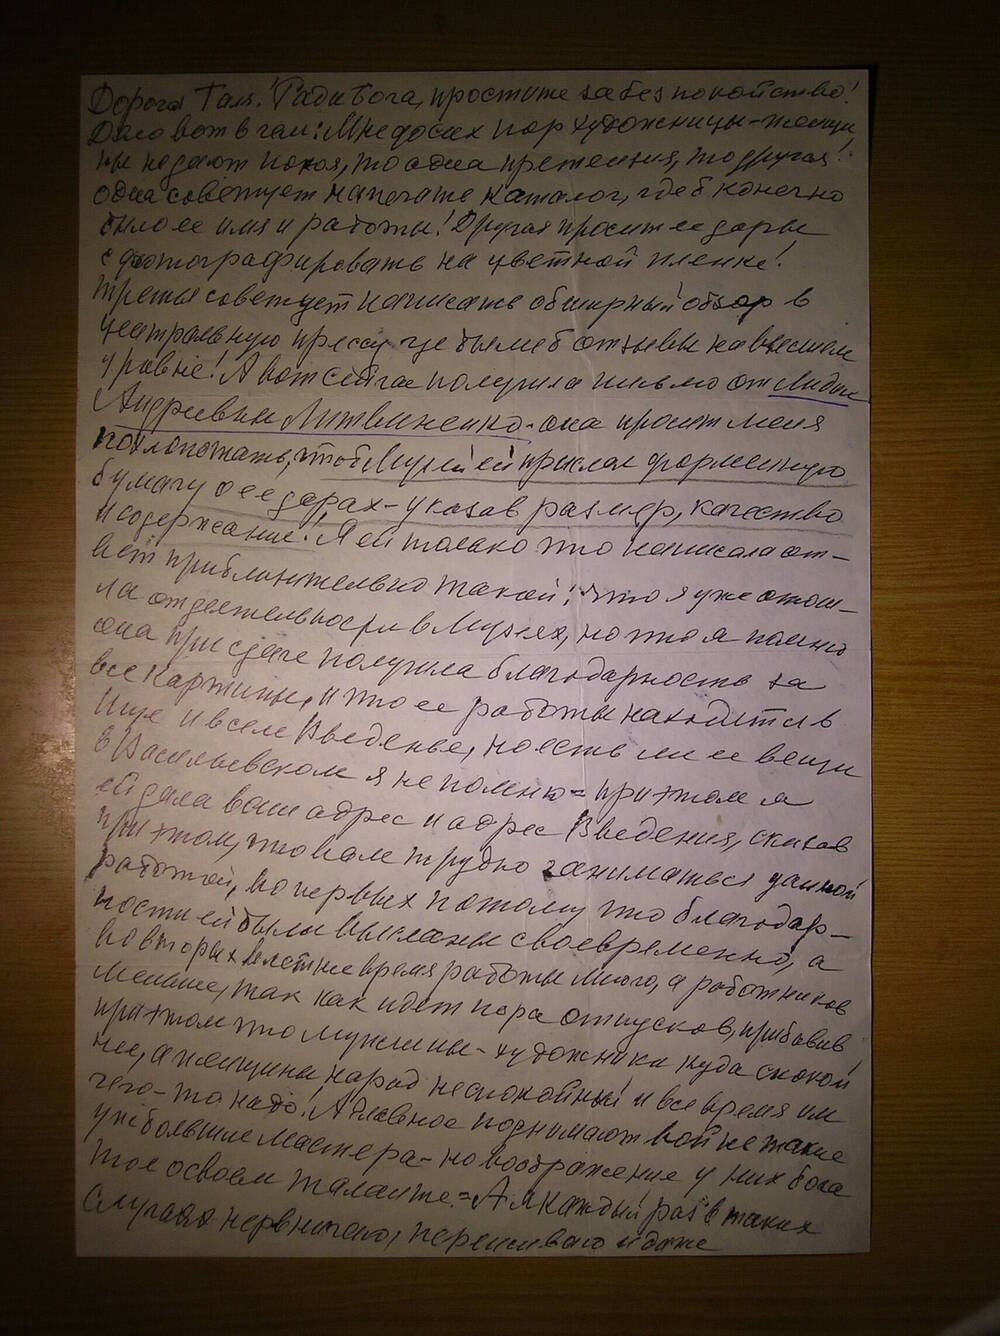 Письмо от Мазуровой Е.Я. Комаровой Г.Н. делового характера. Г. Москва.